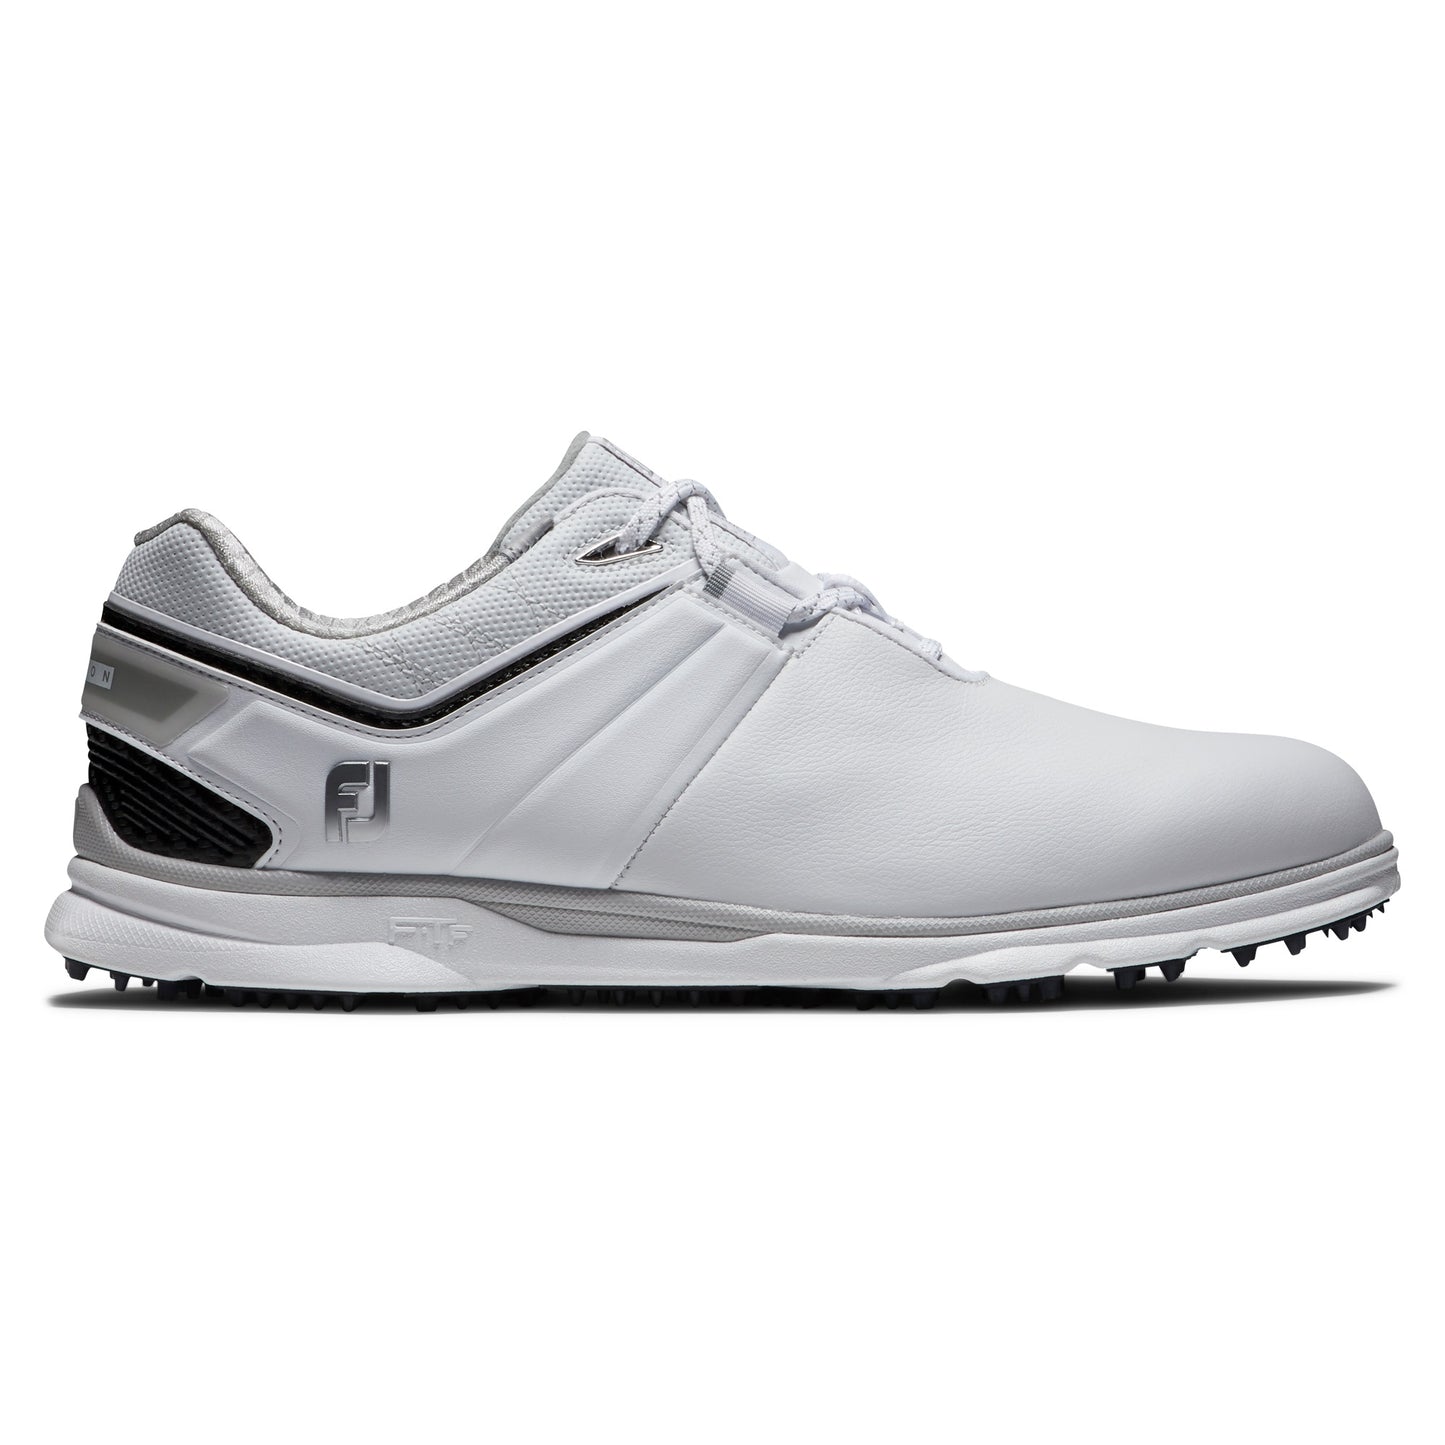 FootJoy Pro|SL Carbon Golf Shoes 53079 White/Navy (Previous Season Style)